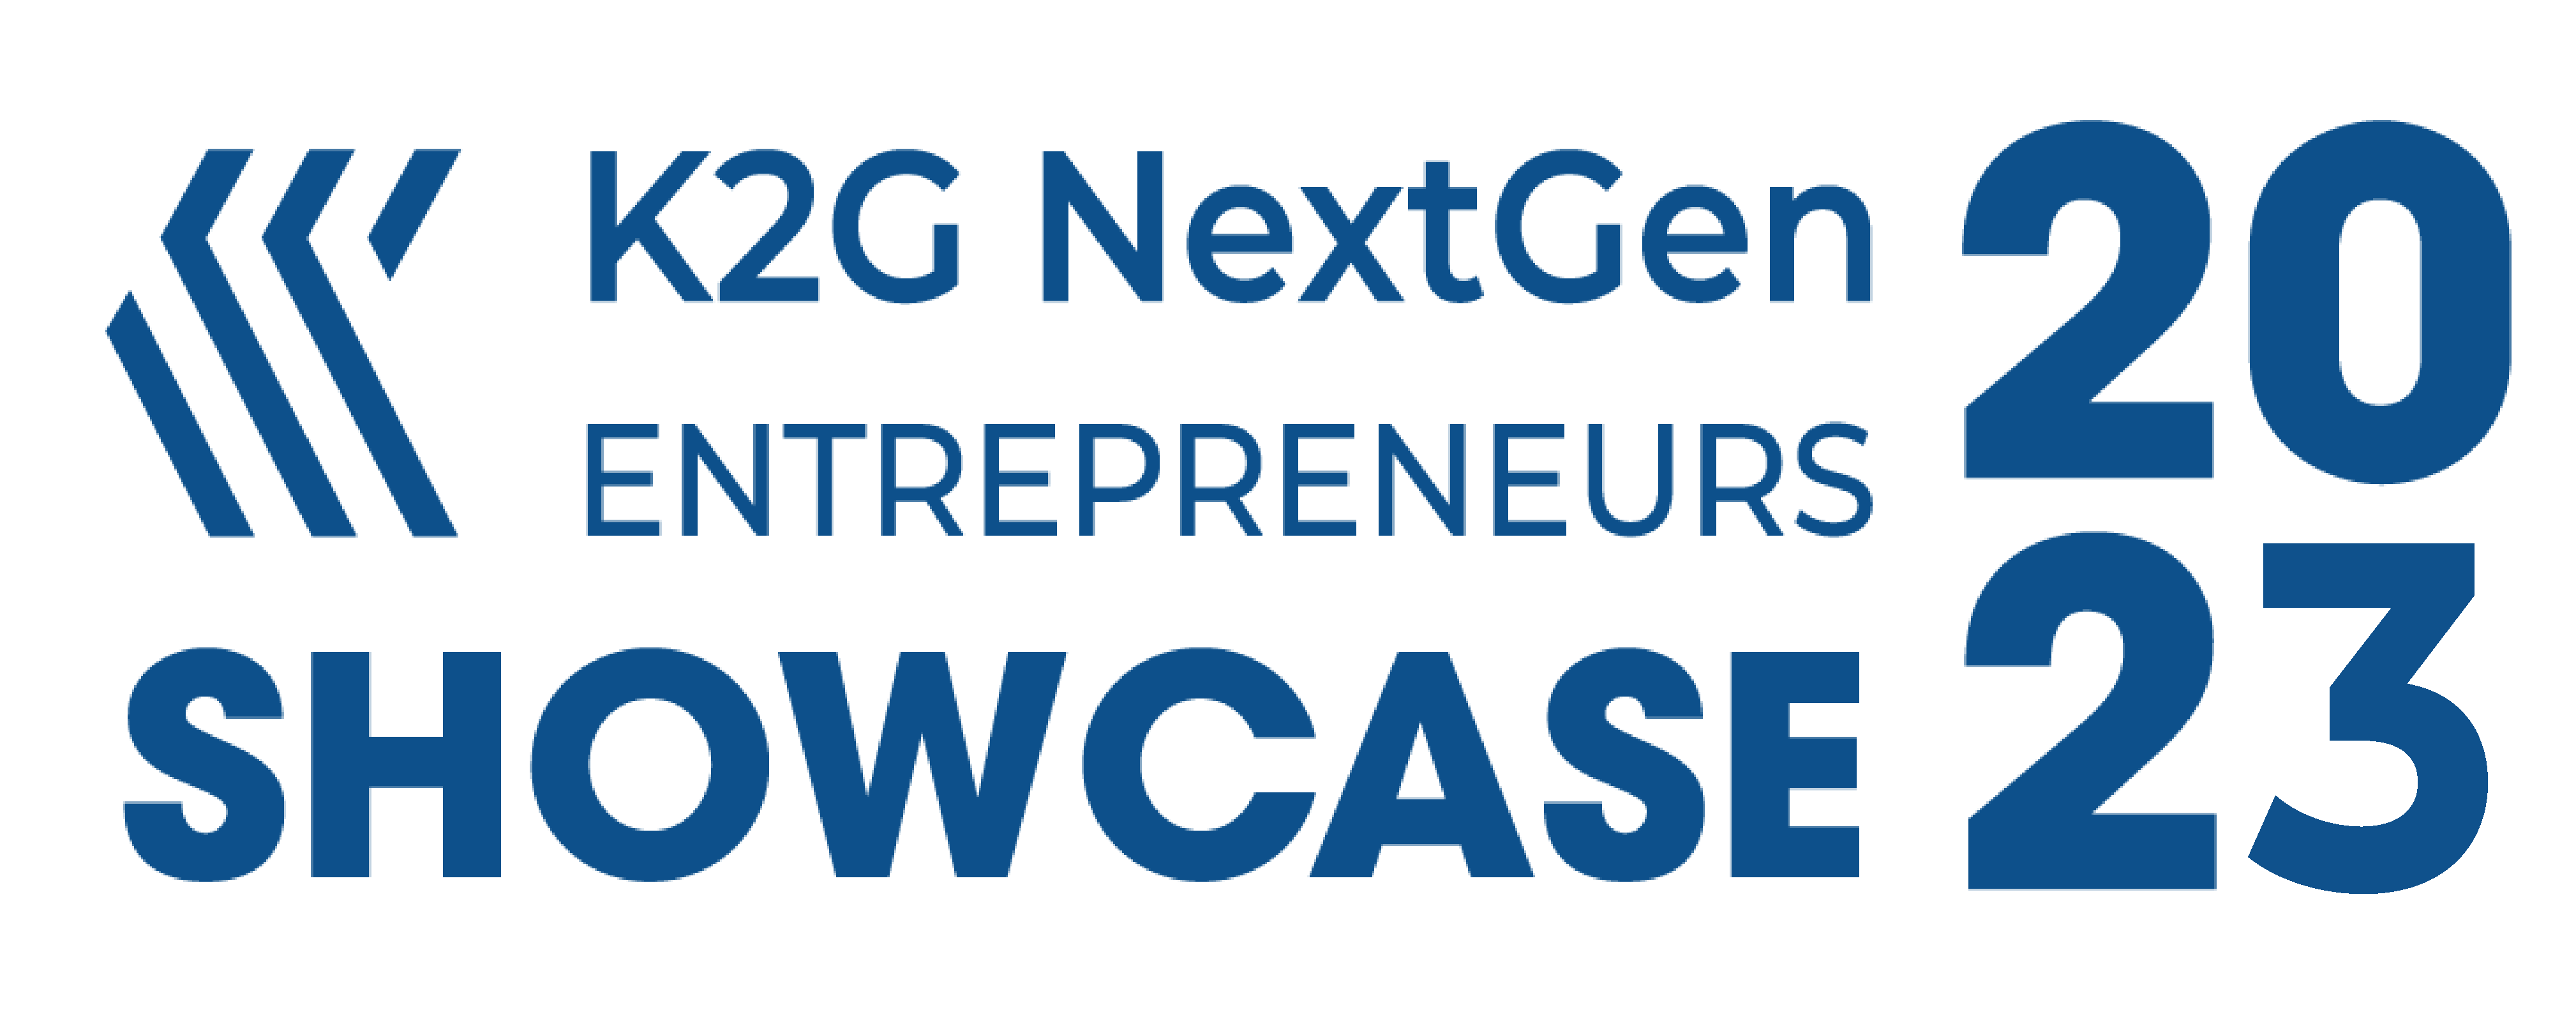 K2G NextGen Entrepreneurs Showcase 2023 – in4msme